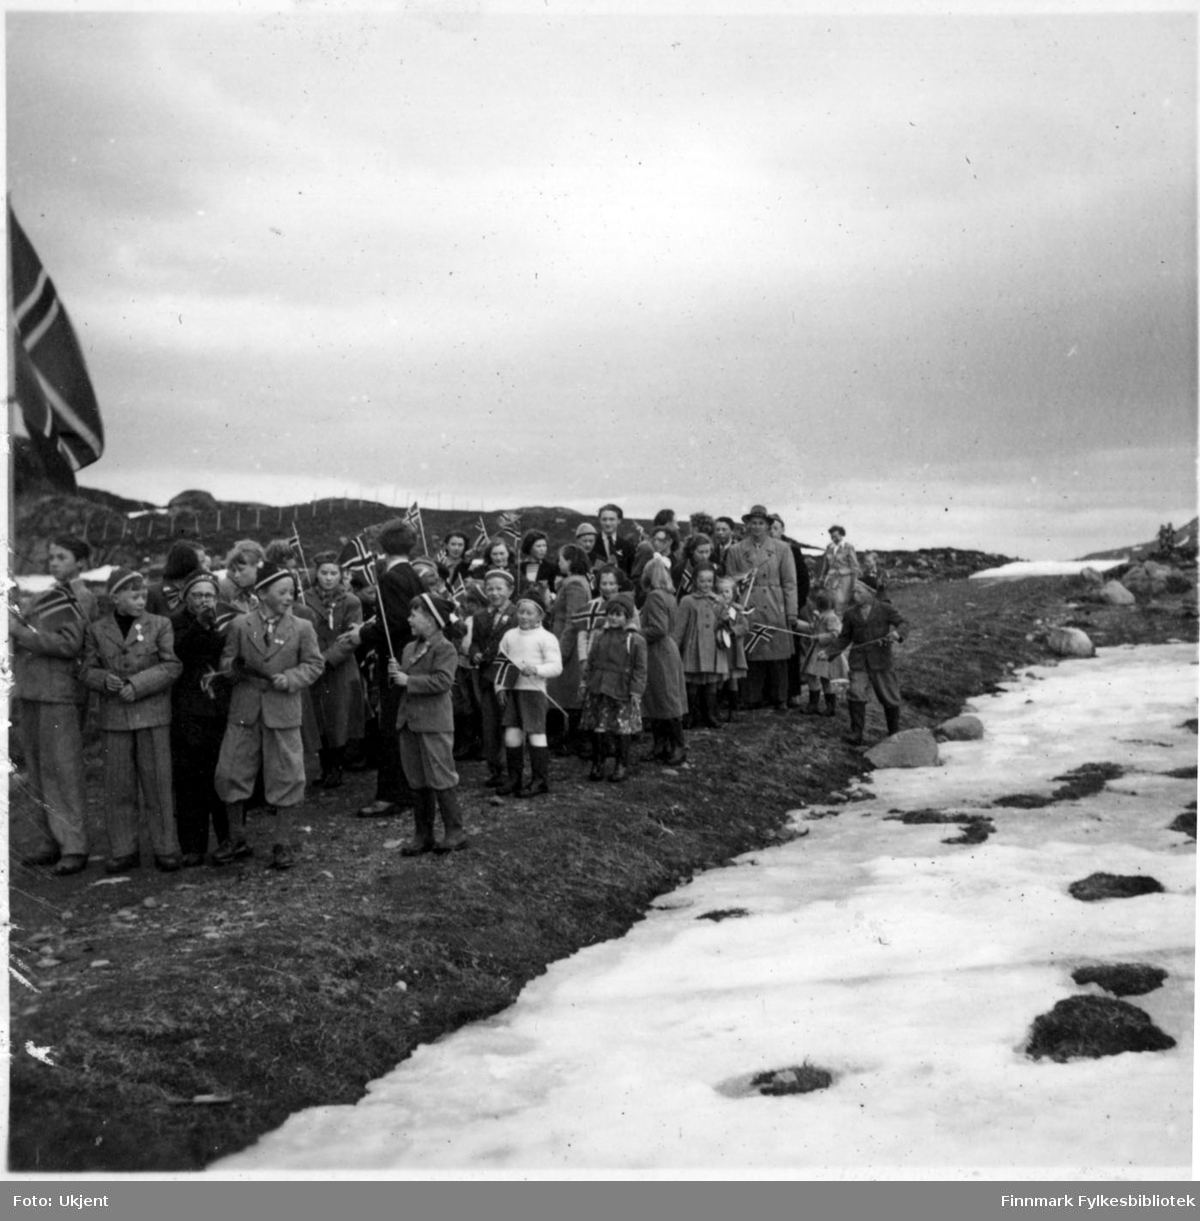 17.mai feiring i Nuvsvåg etter frigjøringen. Fotografiet tatt på slutten av 1940-tallet. Barn går i 17.mai tog med norskeflagg. Barna er kledd i skjørt, luer, bukser, gensere, jakker og sko. Man kan se enkelte menn kledd i jakker og hatter. På bakken ligger det snø.